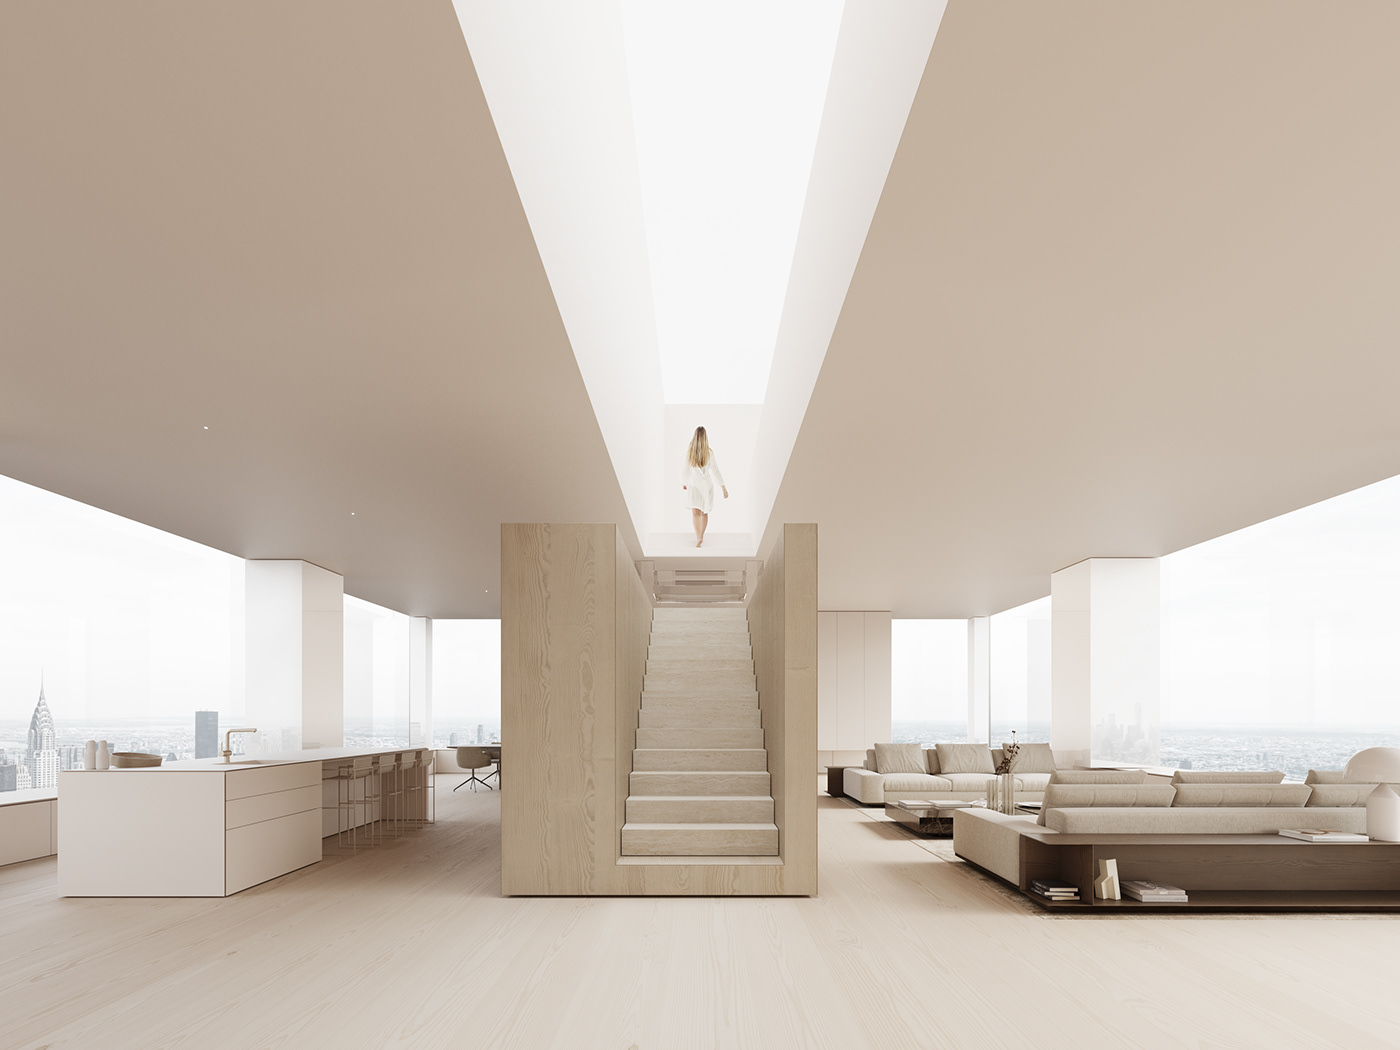 3ds max archviz design interior design  interiorimo Render visualization